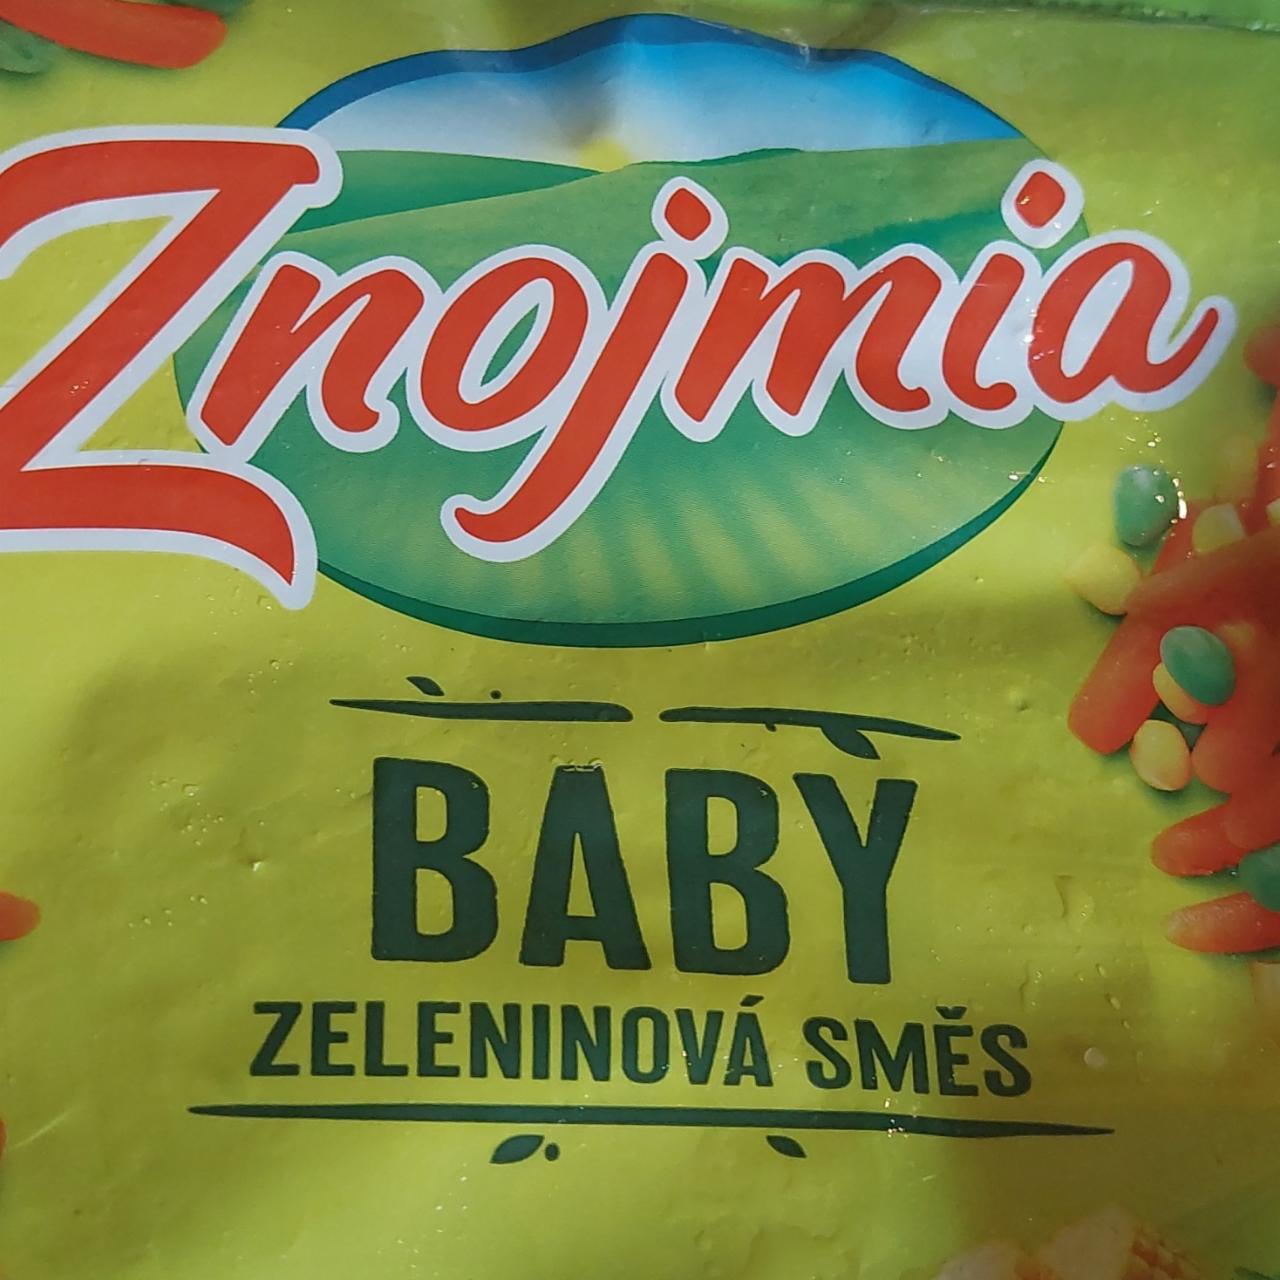 Fotografie - baby zeleninová směs Znojmia Orkla